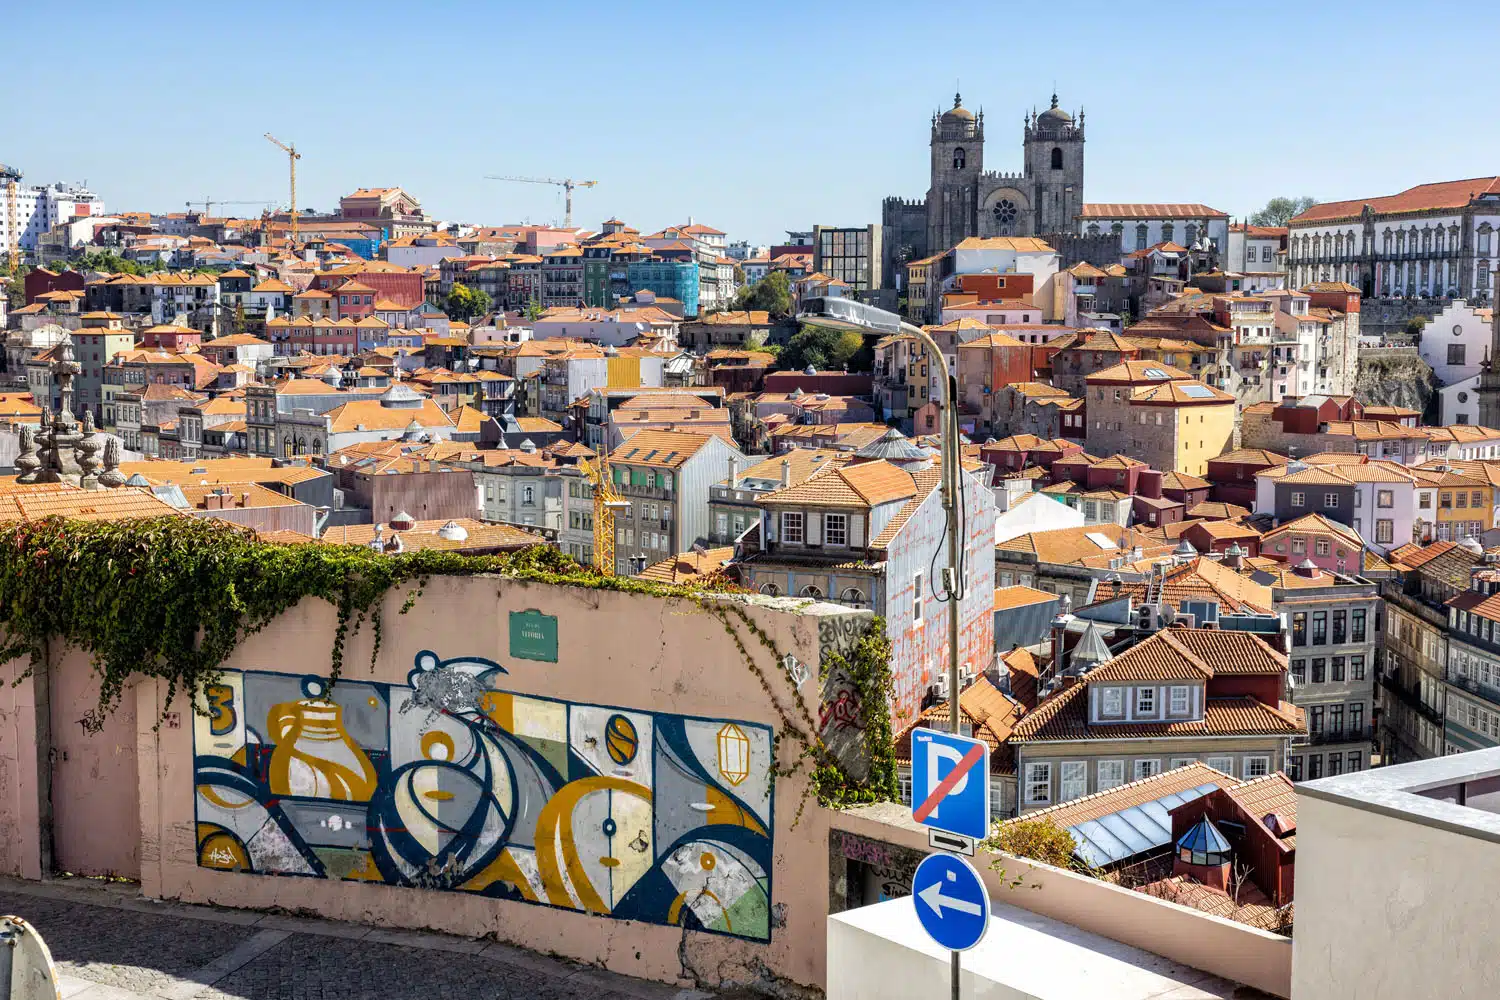 Miradouro da Vitoria | One day in Porto